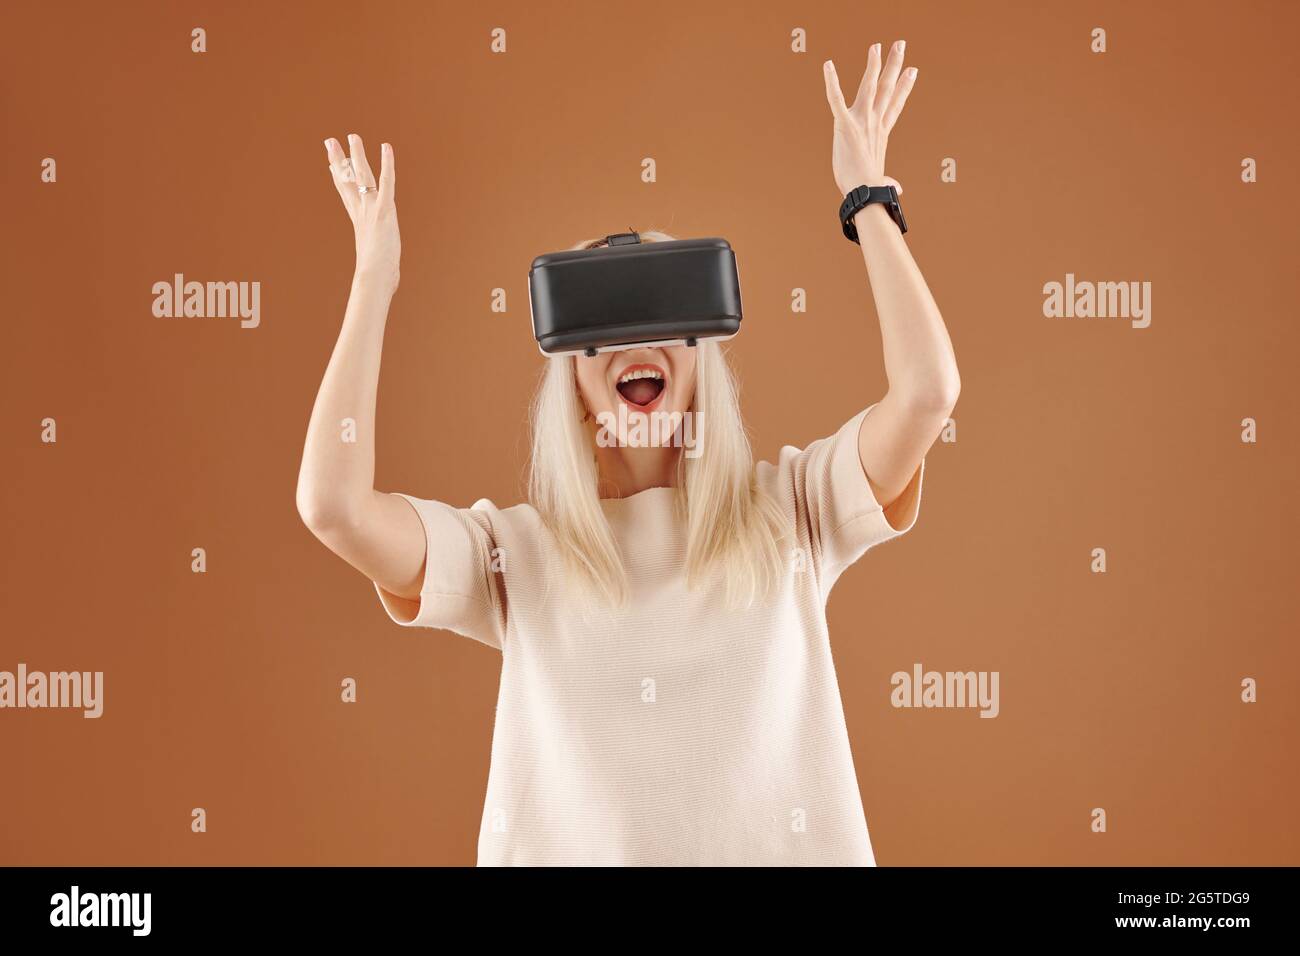 Jeune femme blonde ravie avec la bouche ouverte levant les mains dans l'excitation tout en utilisant le simulateur de réalité virtuelle sur fond marron Banque D'Images